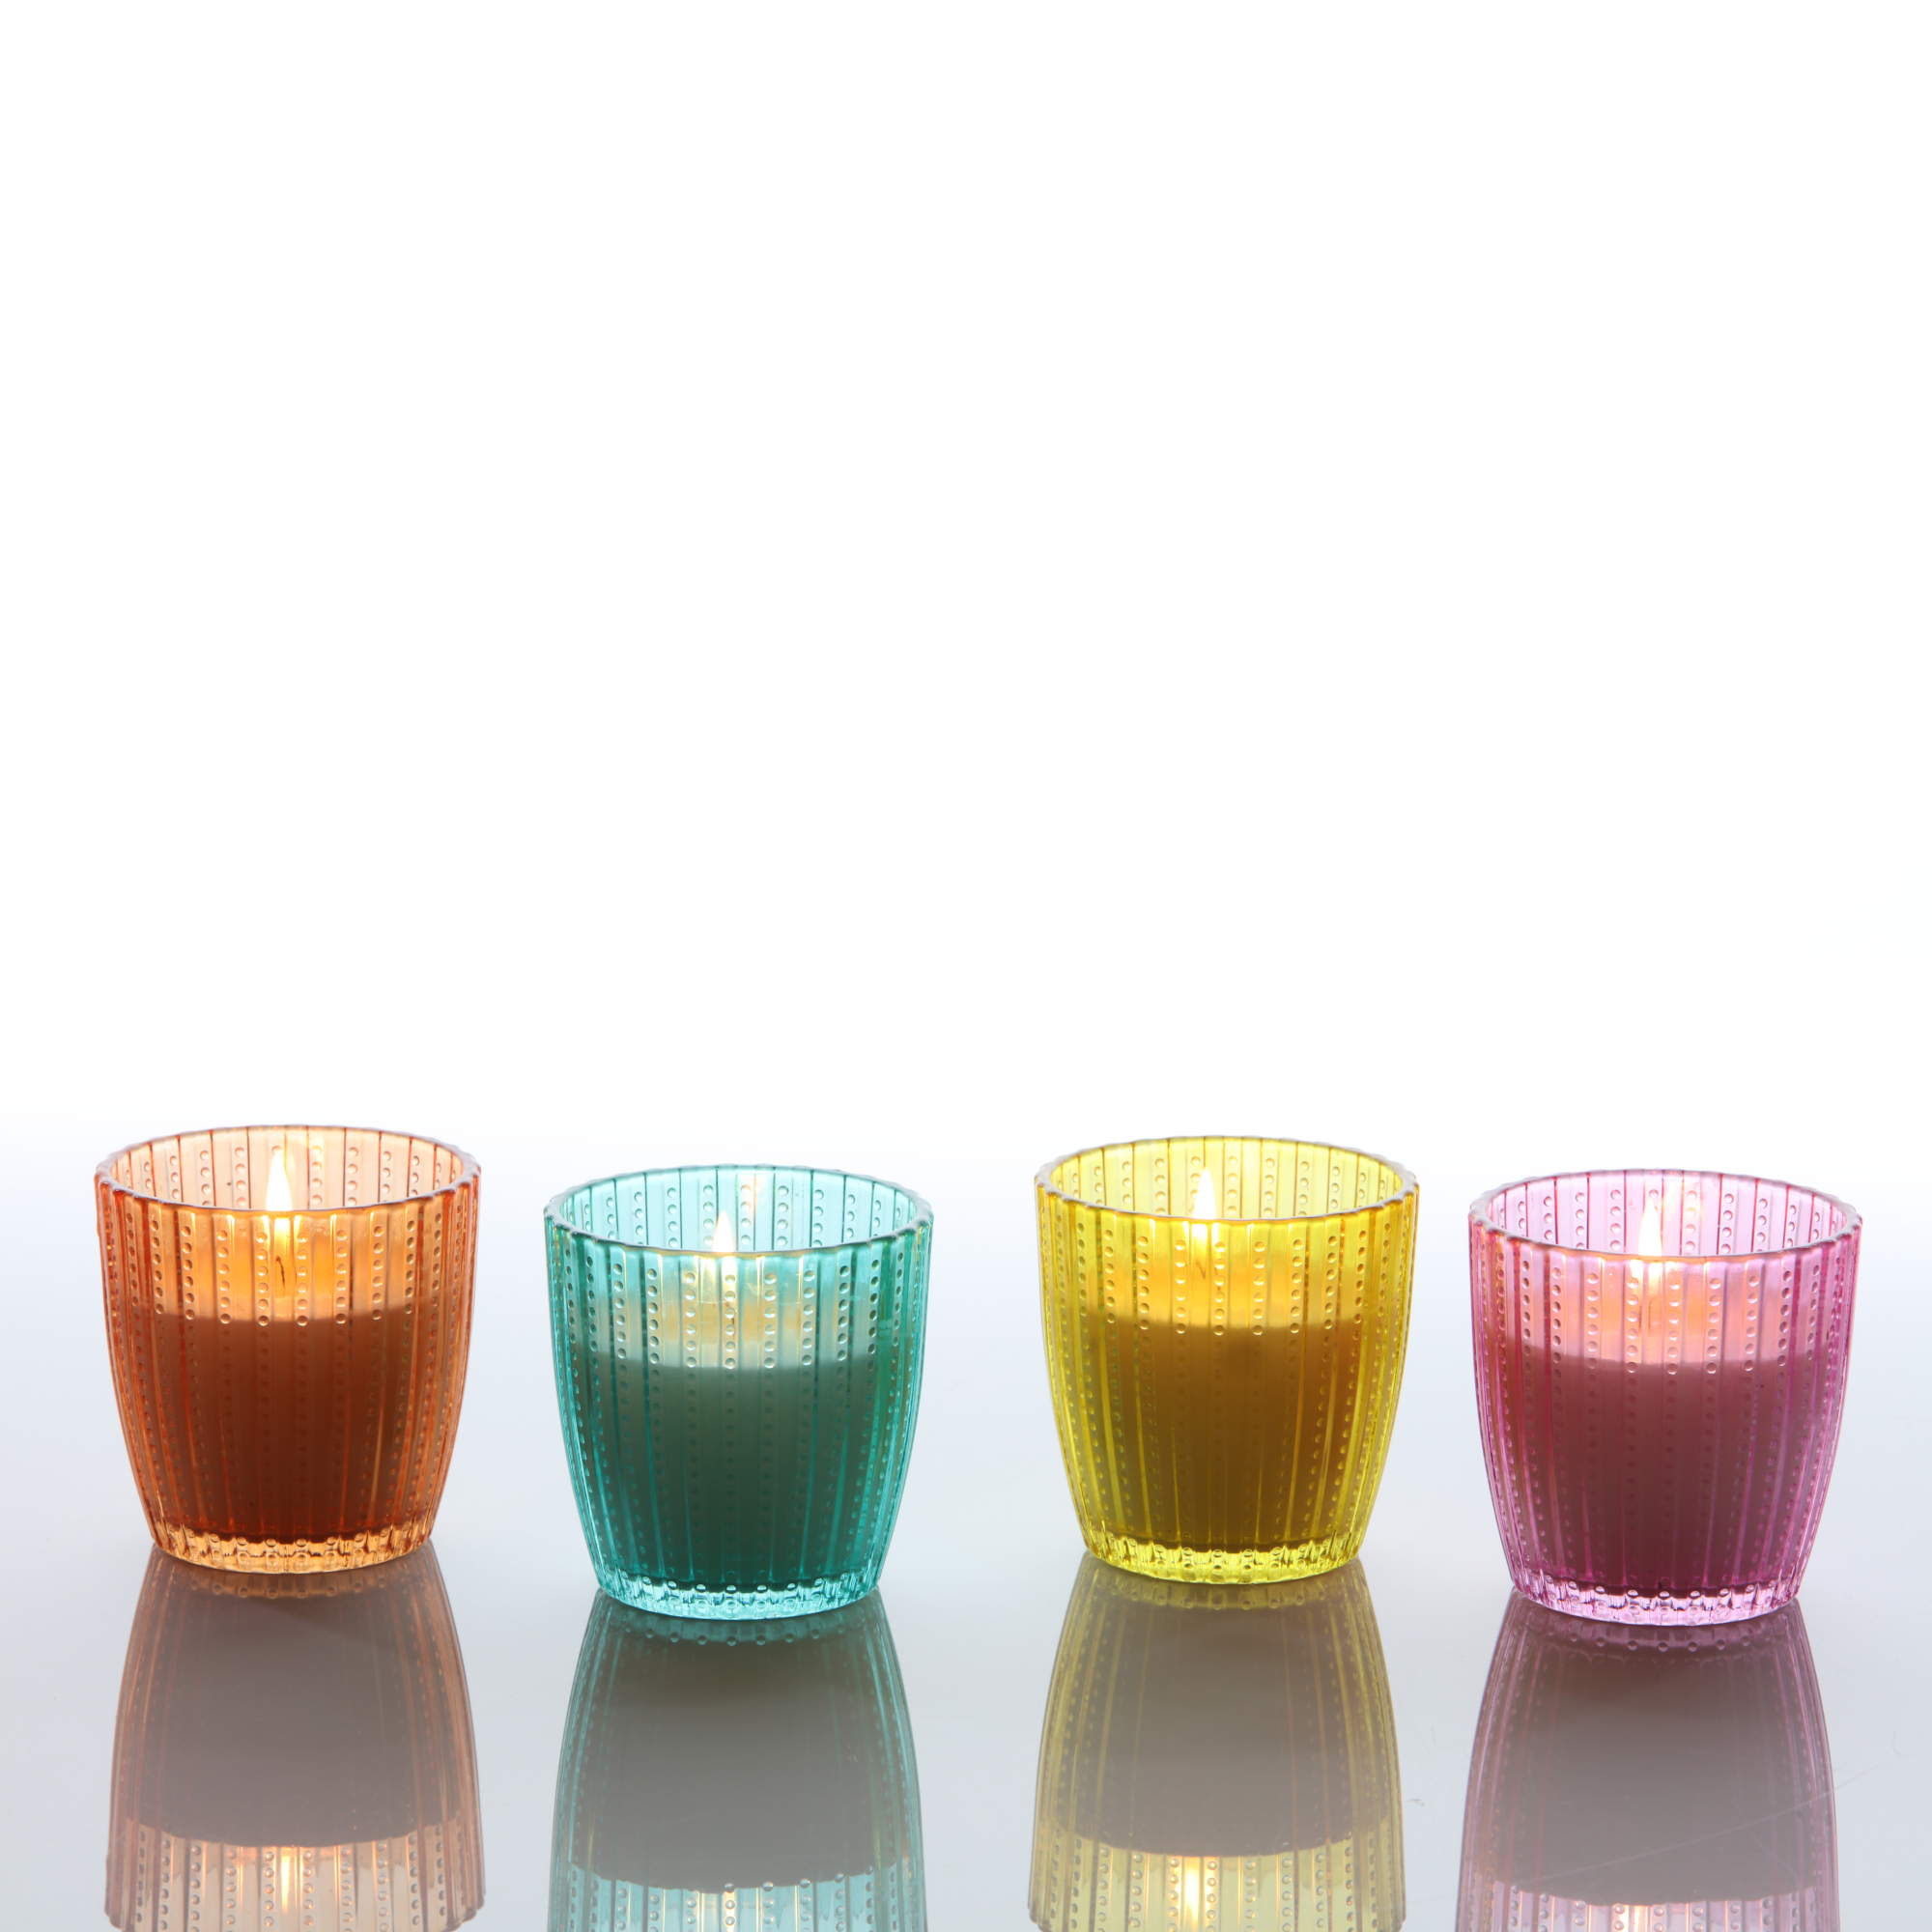 Duftkerze im Glas 'Casco Citronella' farbig sortiert + product picture